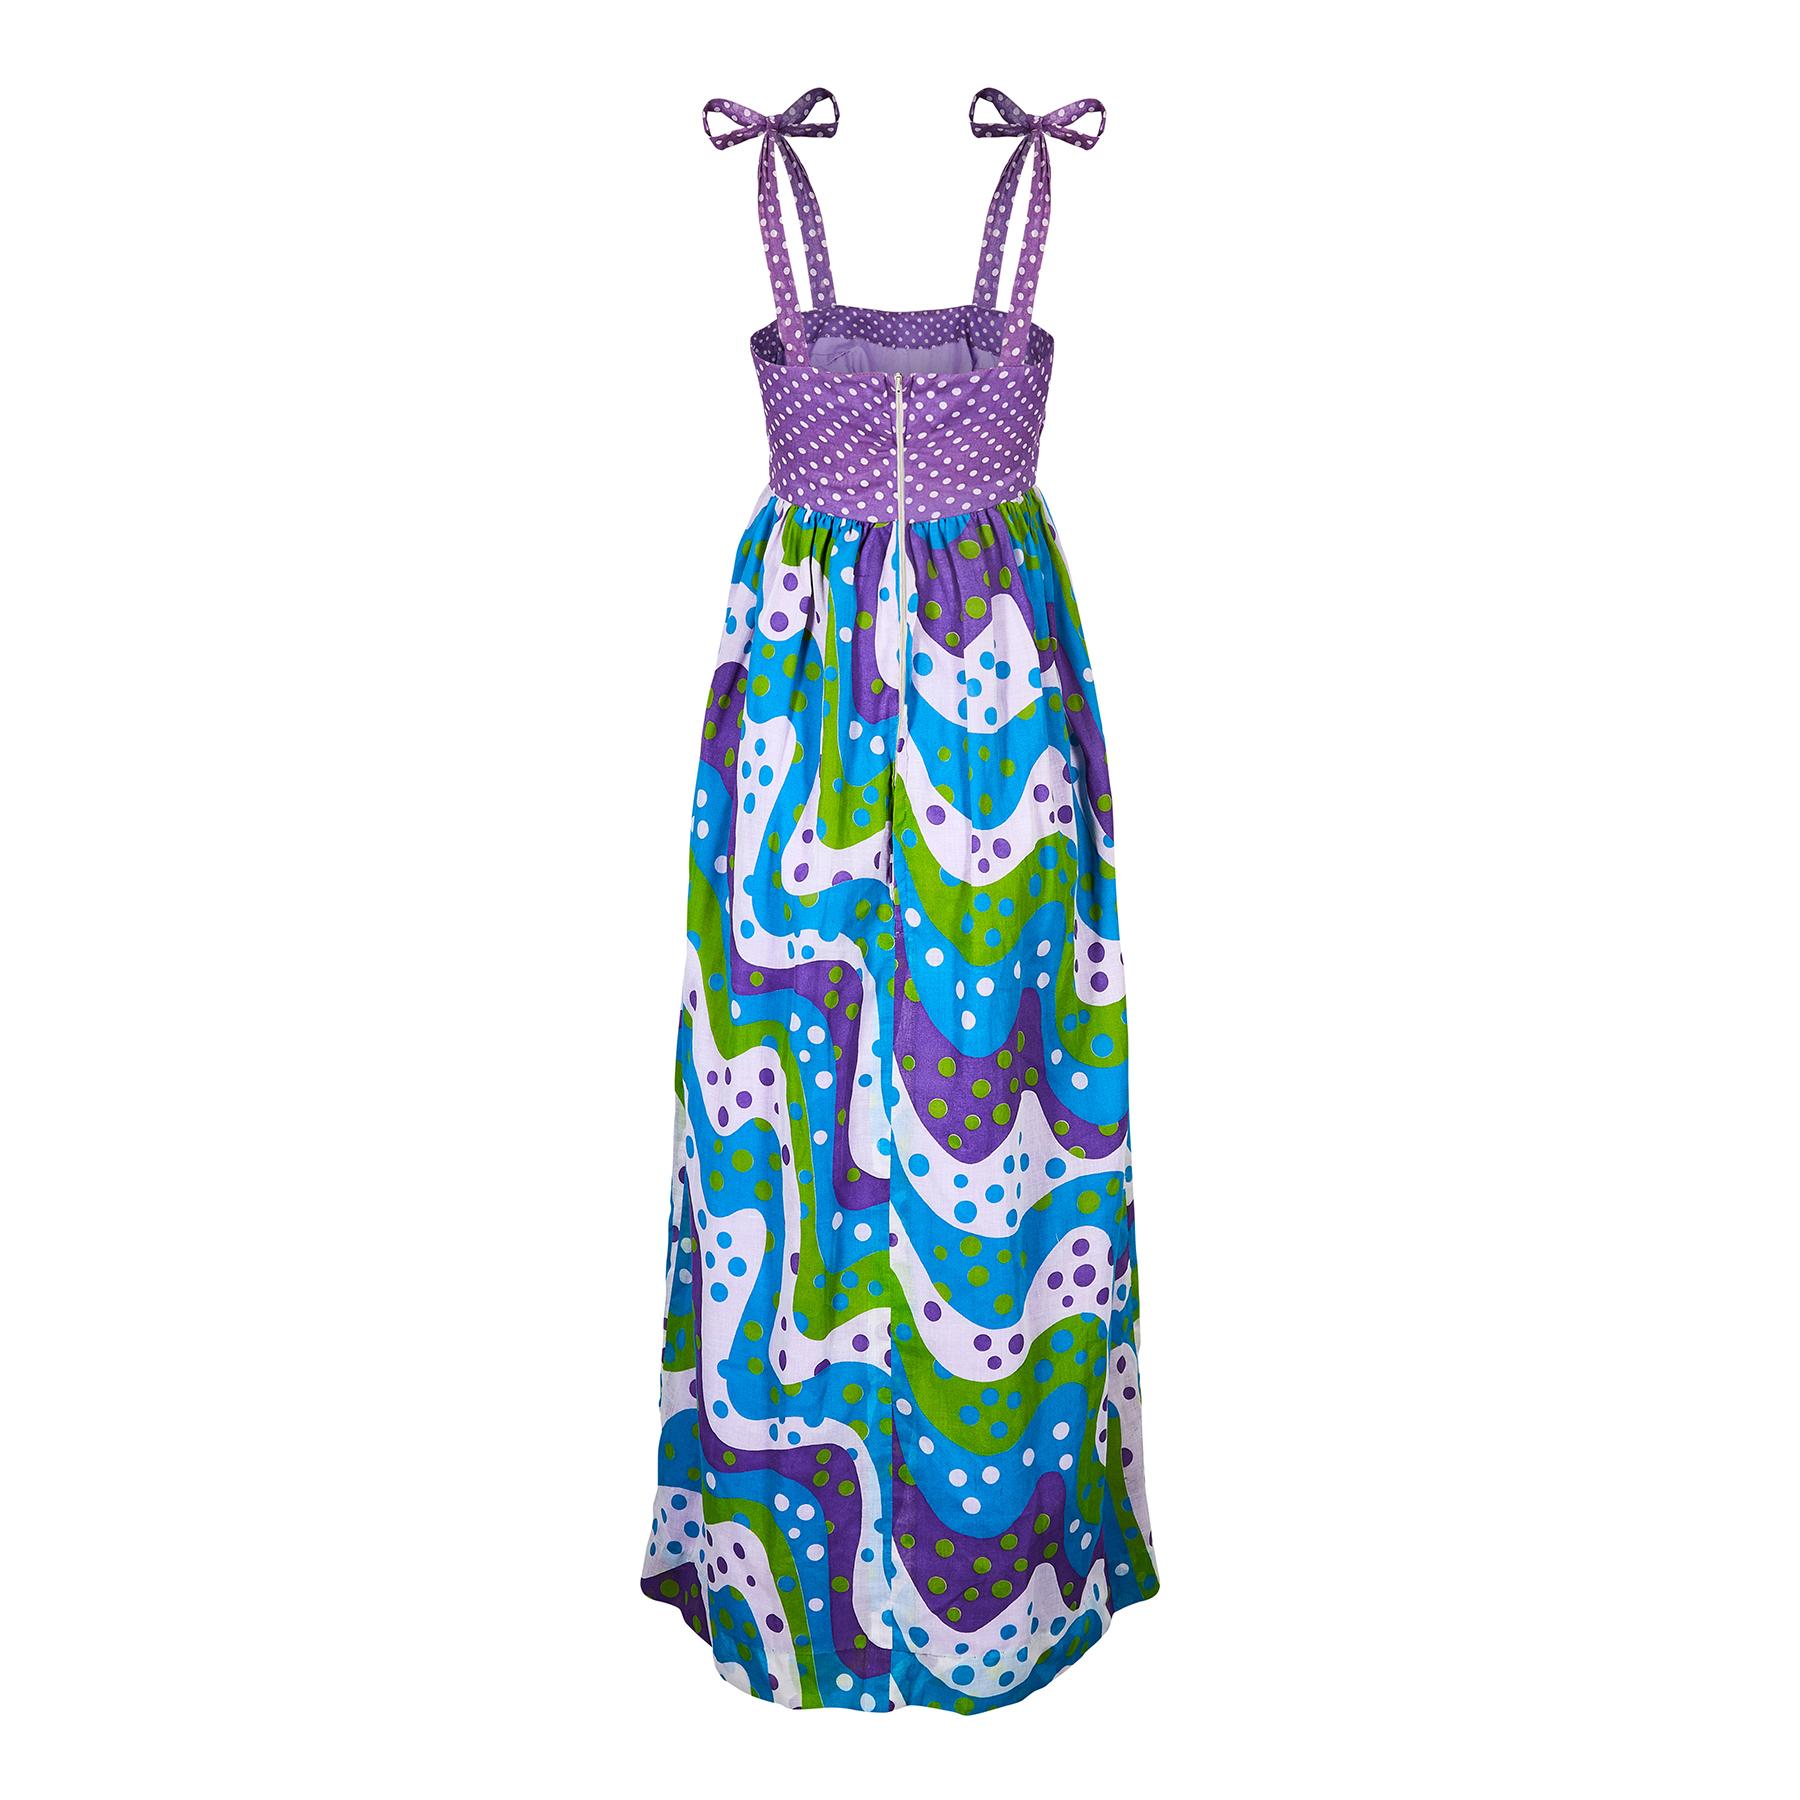 Cette robe maxi cool et originale des années 1970 combine deux types de tissus à pois dans un format audacieux. La palette de couleurs est composée de vert gazon, de sarcelle, de violet et de blanc. Le tissu est une mousseline de coton légère et